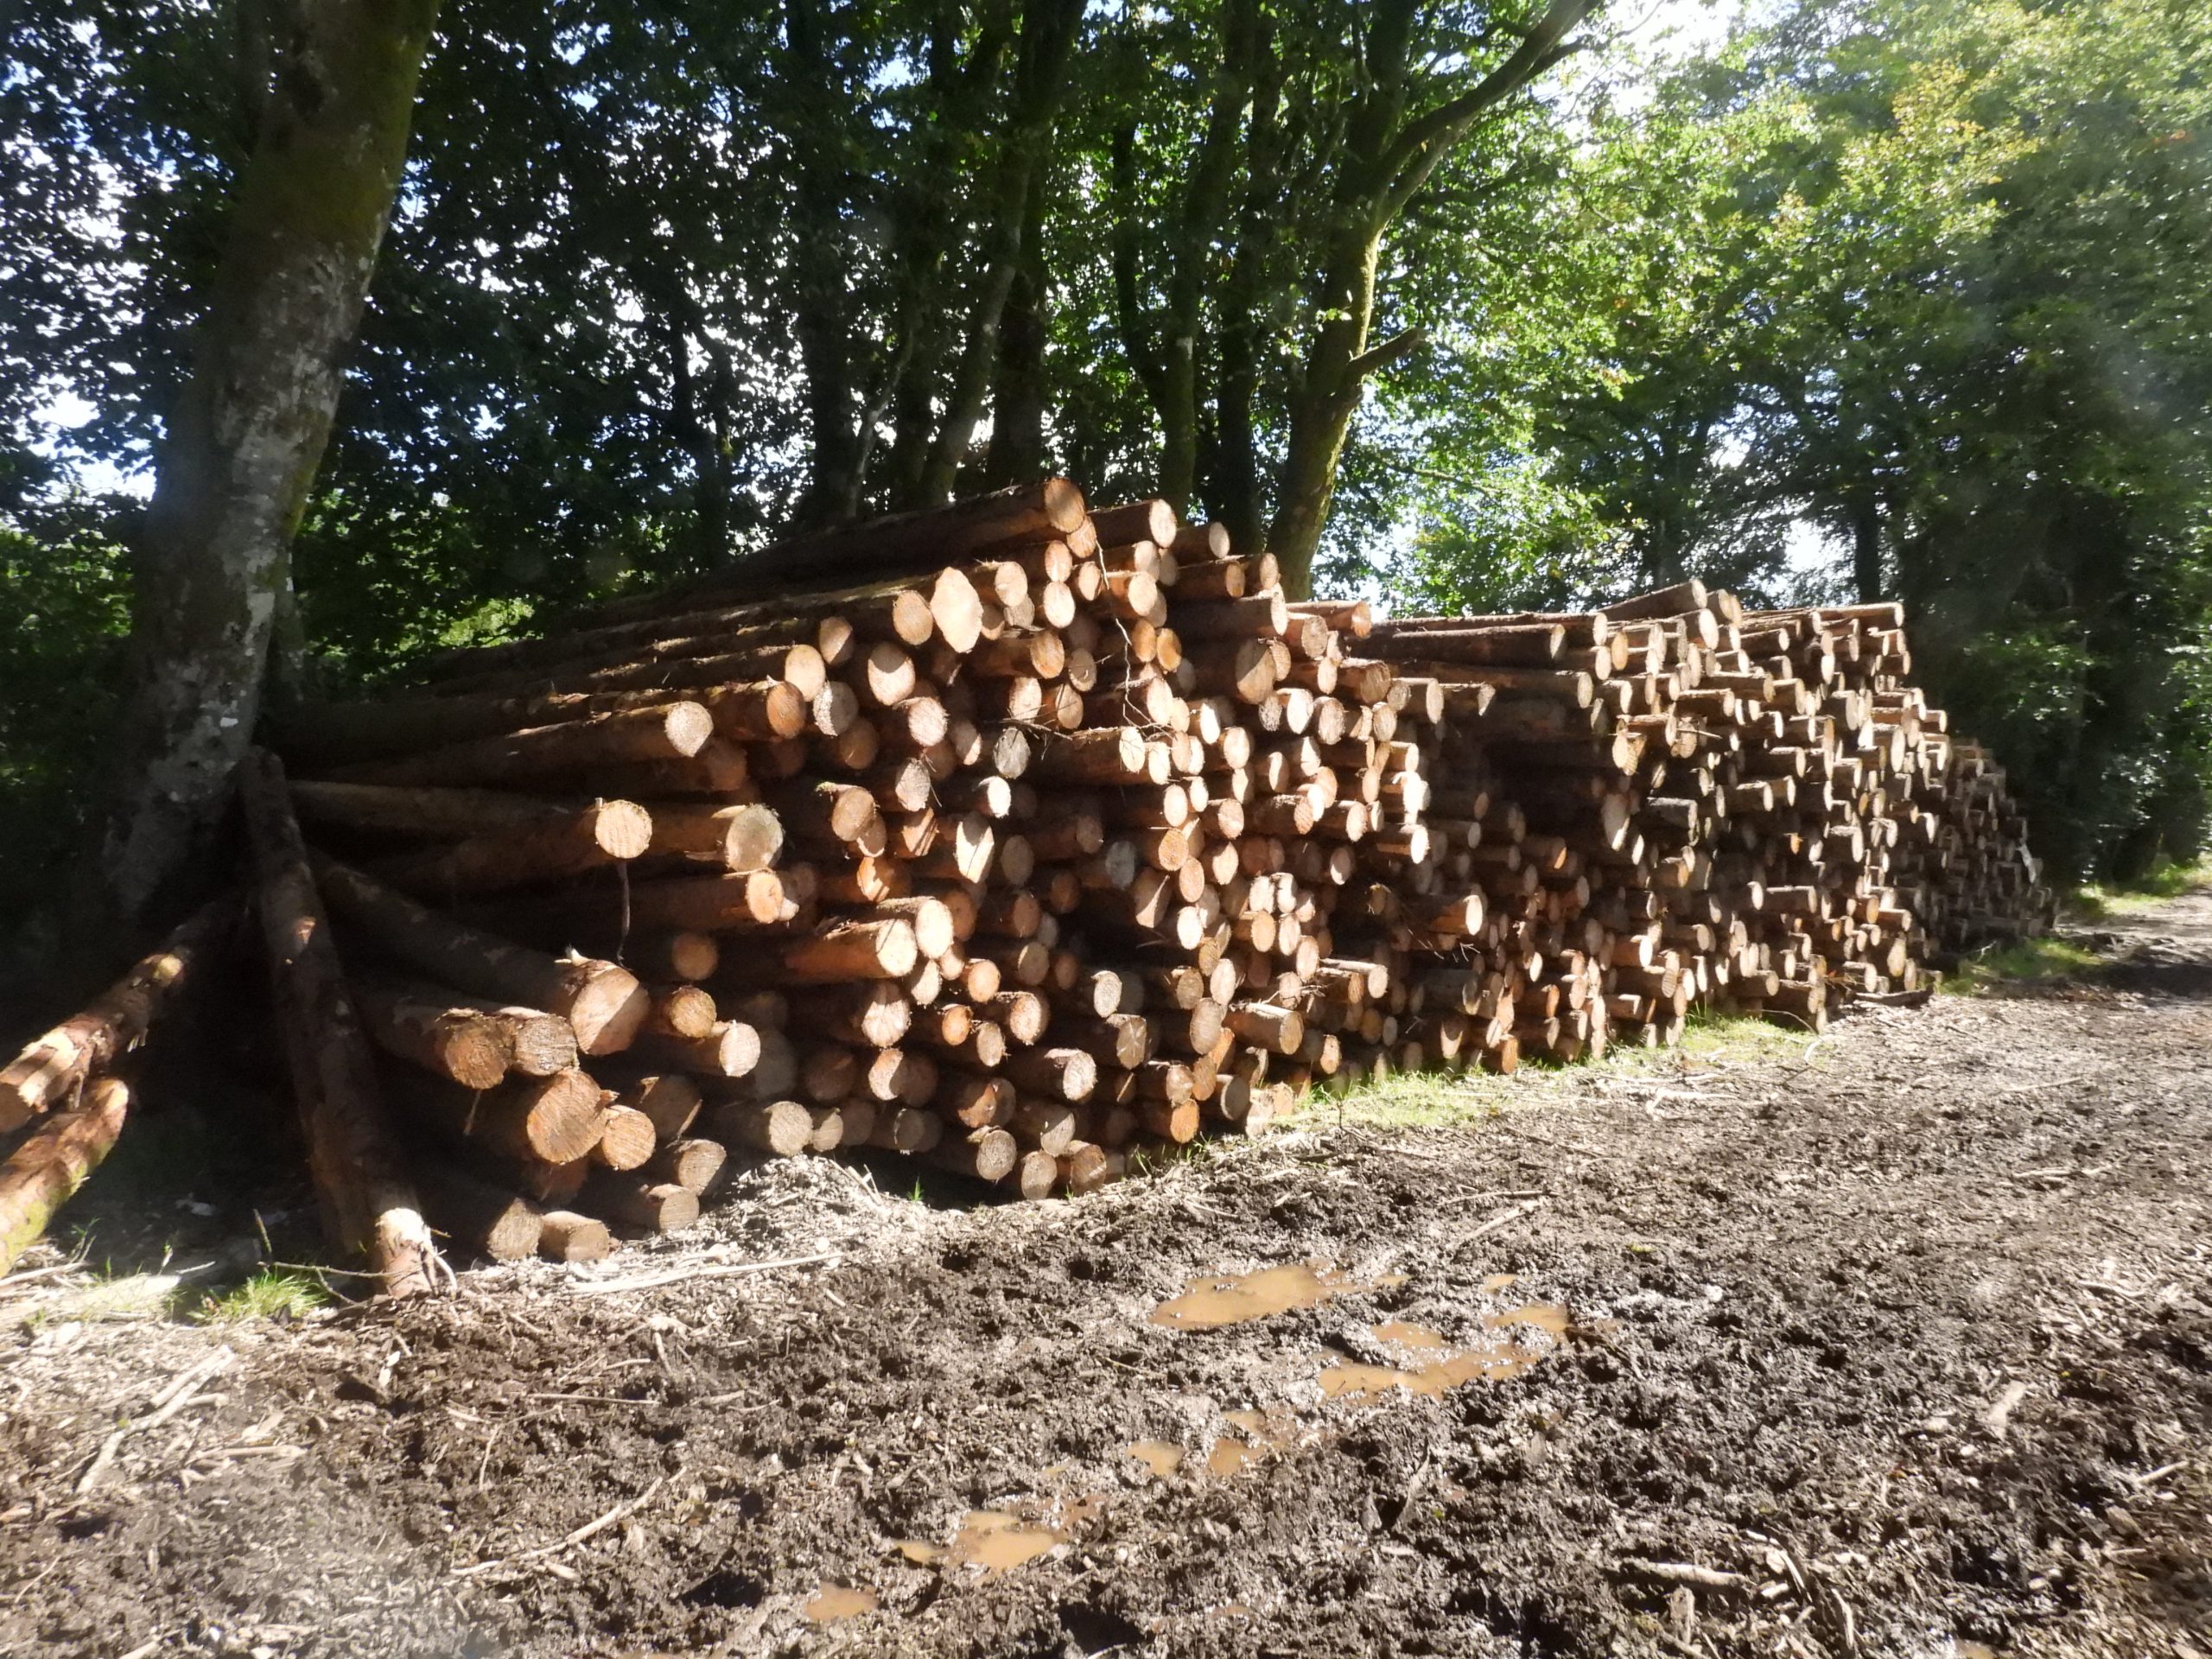 34. Stacks of Logs